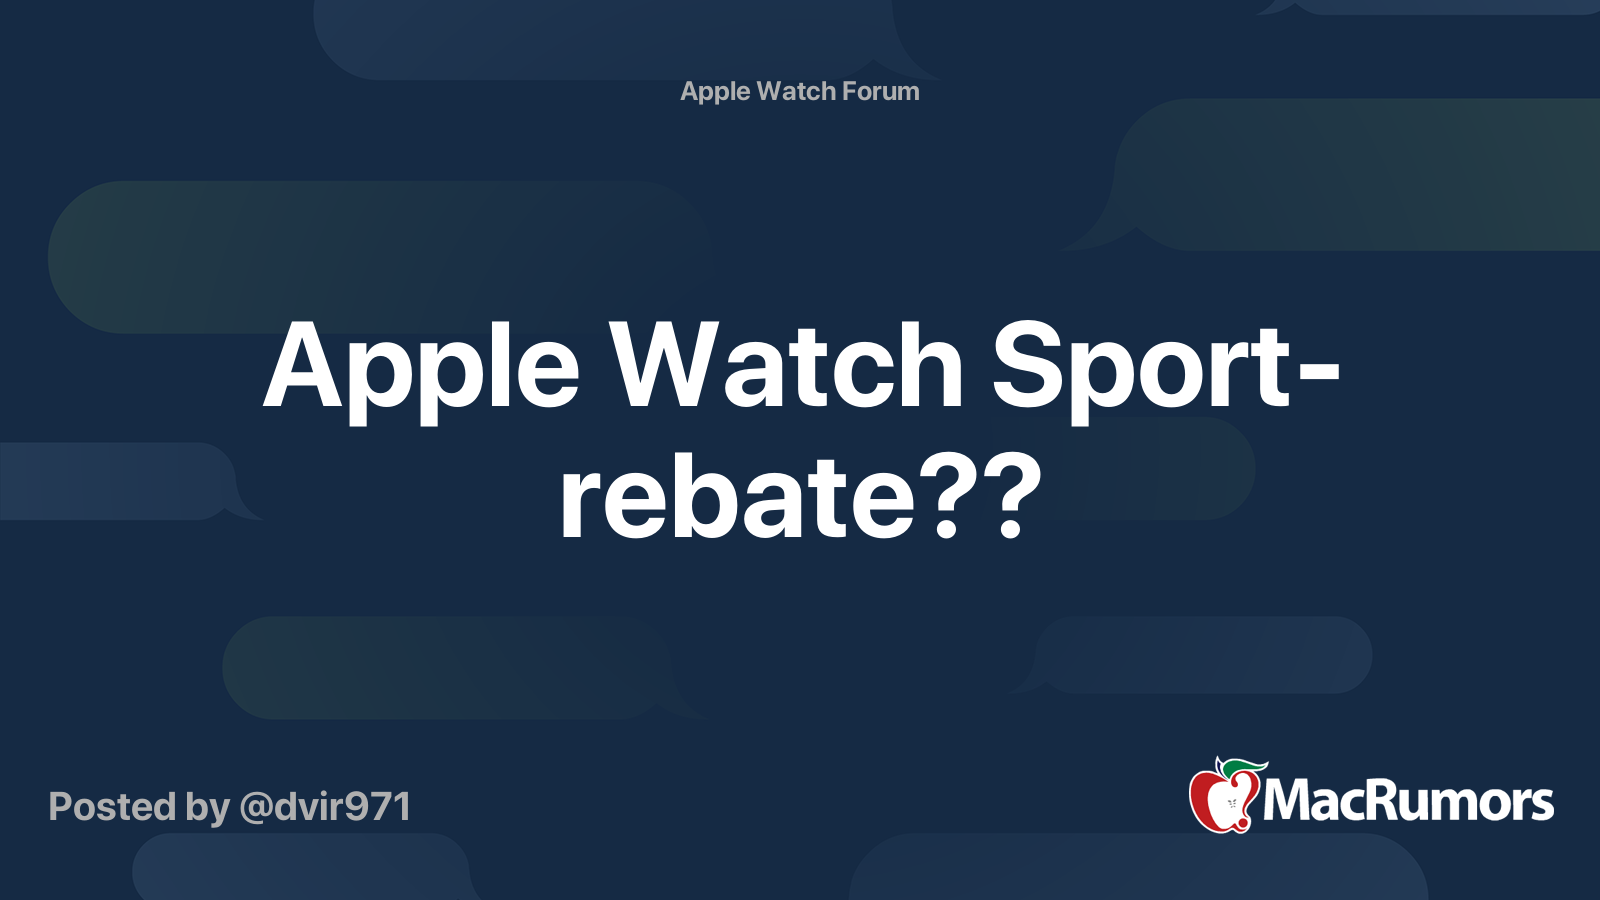 apple-watch-sport-rebate-macrumors-forums